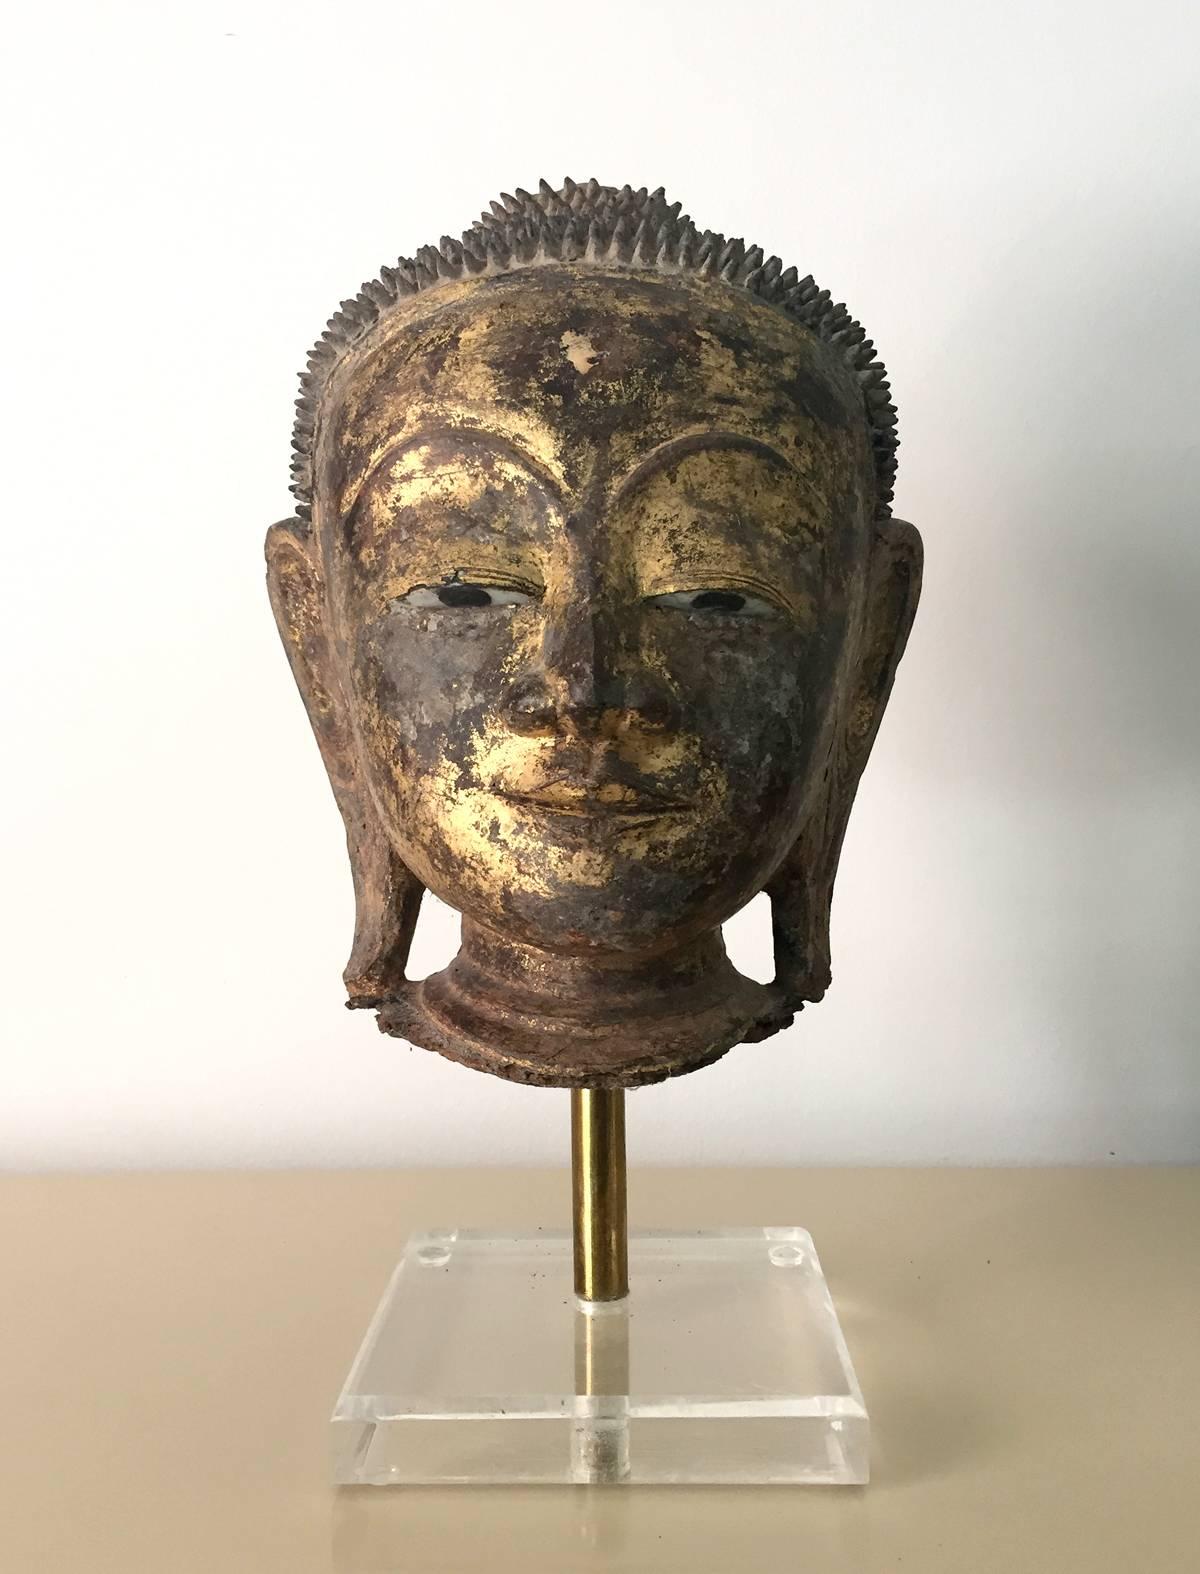 Ein vergoldeter und lackierter Holz-Buddha-Kopf, der auf einem Ständer aus Metall und Lucite ausgestellt ist. Er besticht durch seine raffinierten Merkmale und erstaunlichen Details. Die Schnitzerei ist von exquisiter Qualität. Die Augen wurden mit